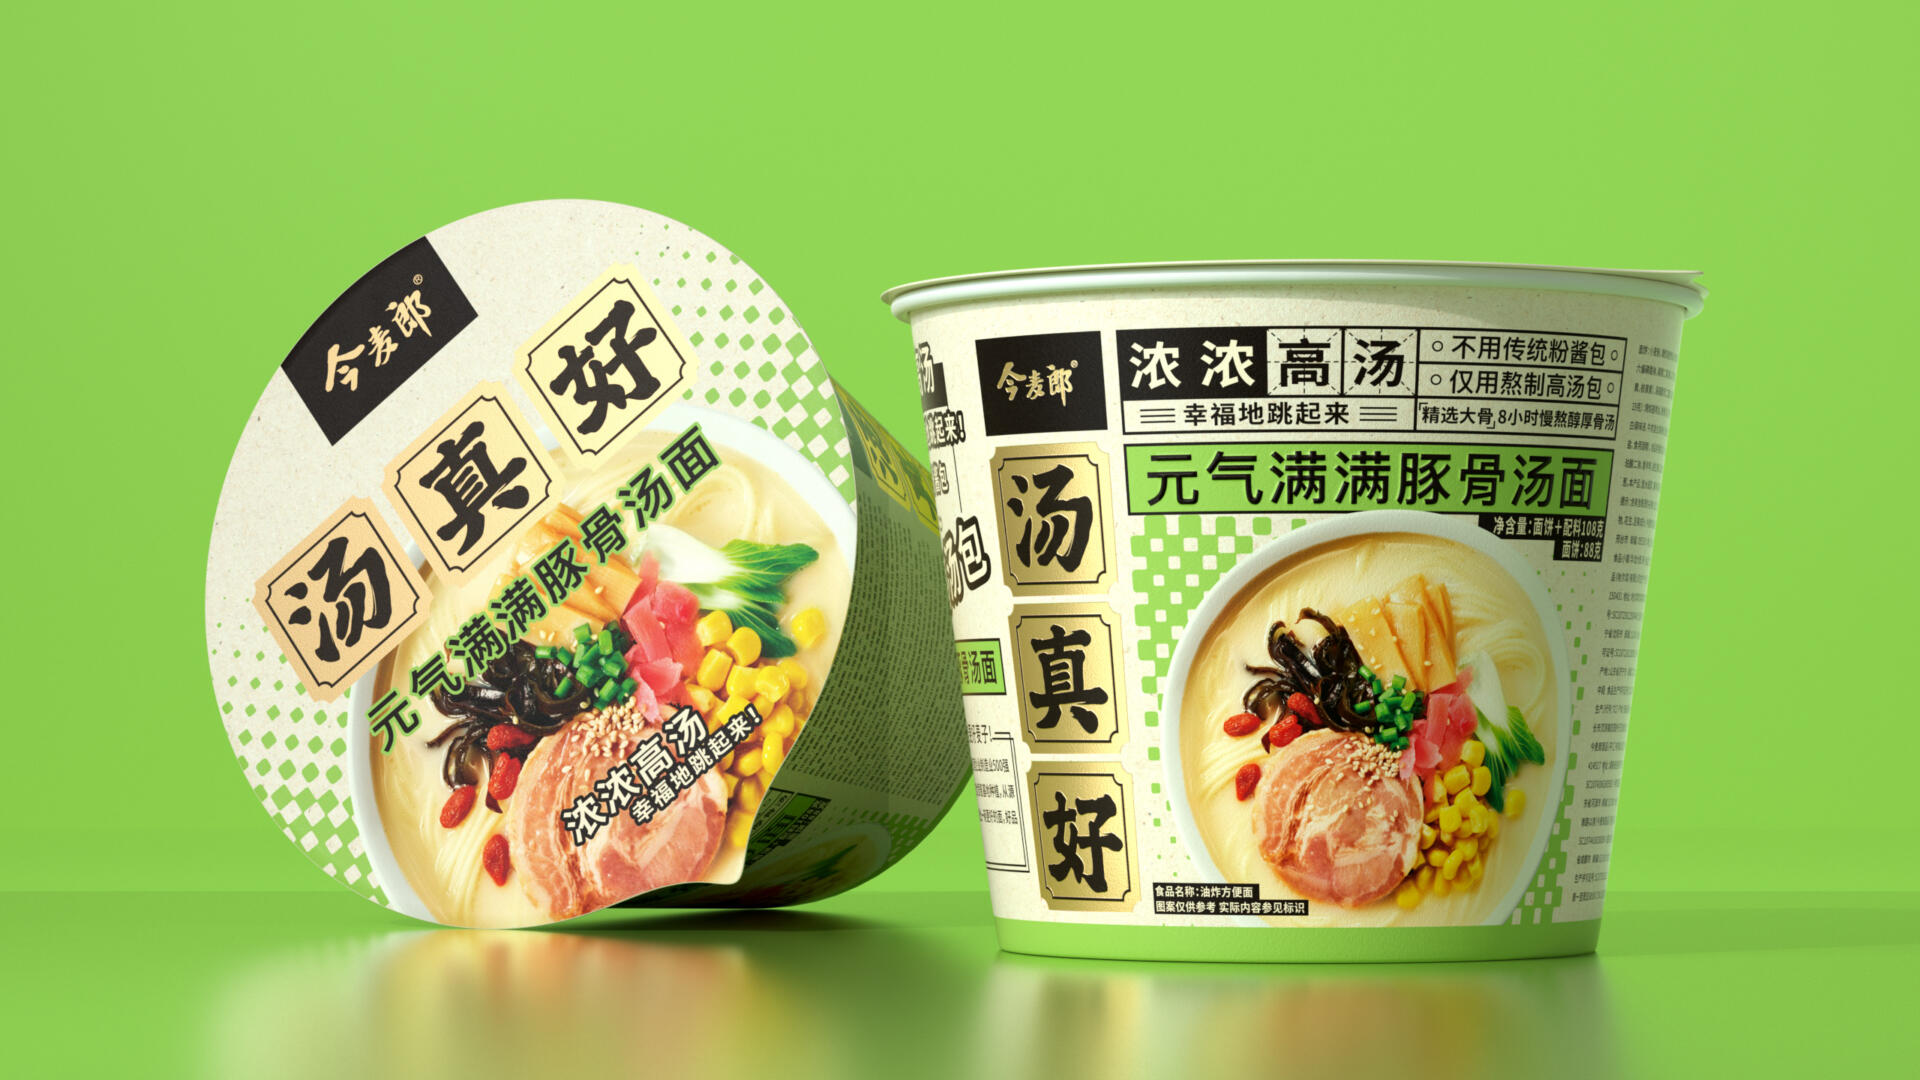 LKKDESIGN × Jinmailang ｜ Behind Jinmailang’s surge in sales – Packaging ...